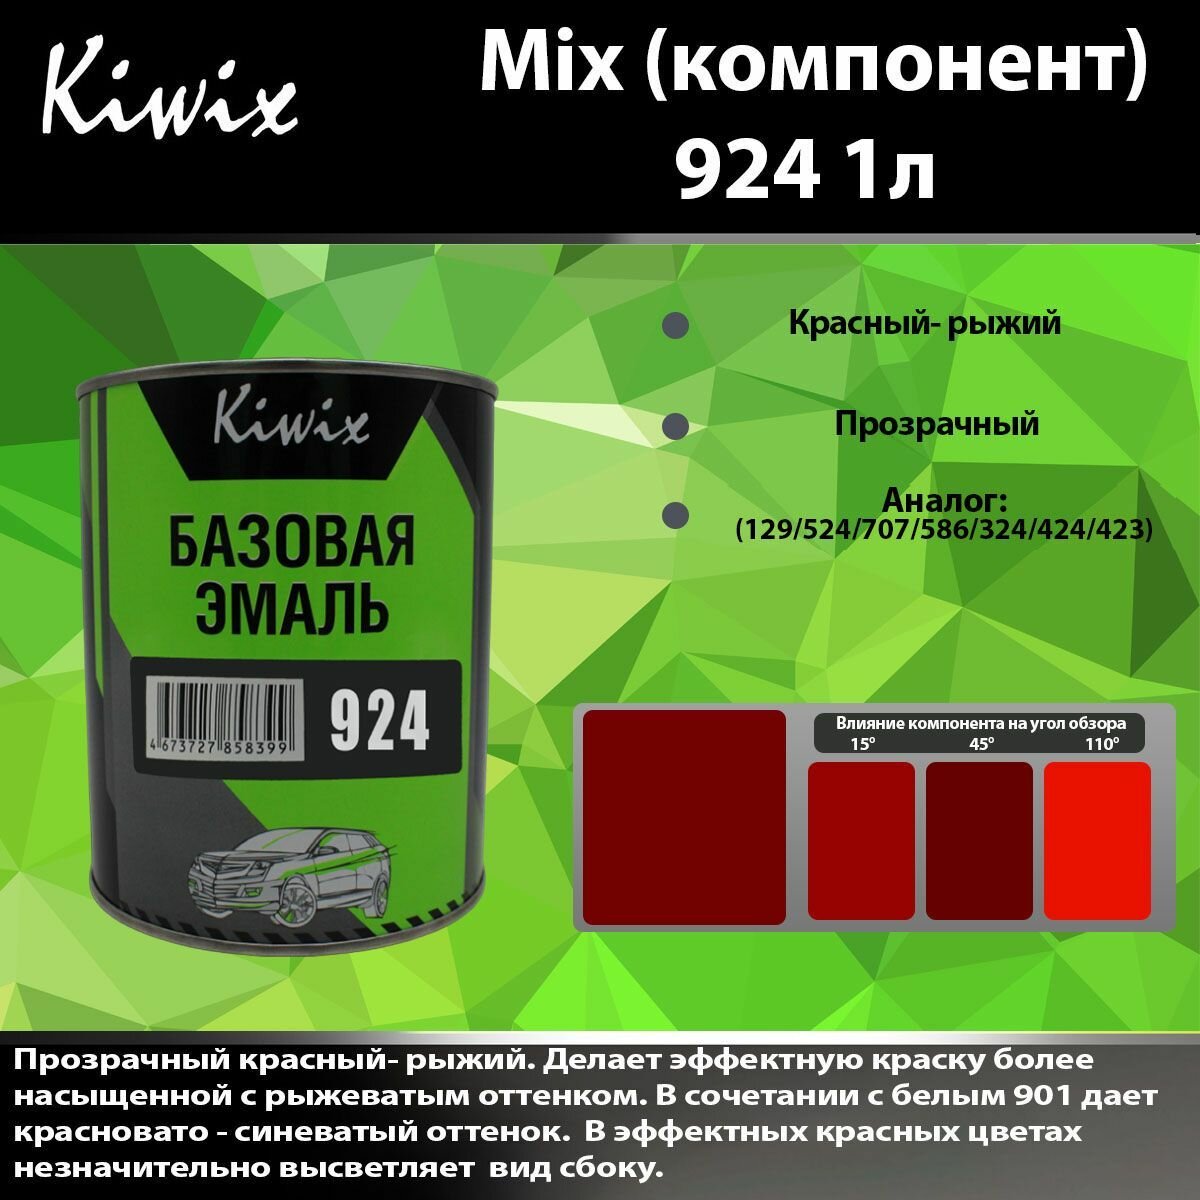 KIWIX MIX 924 1л. Компонент микс. Прозрачный красный